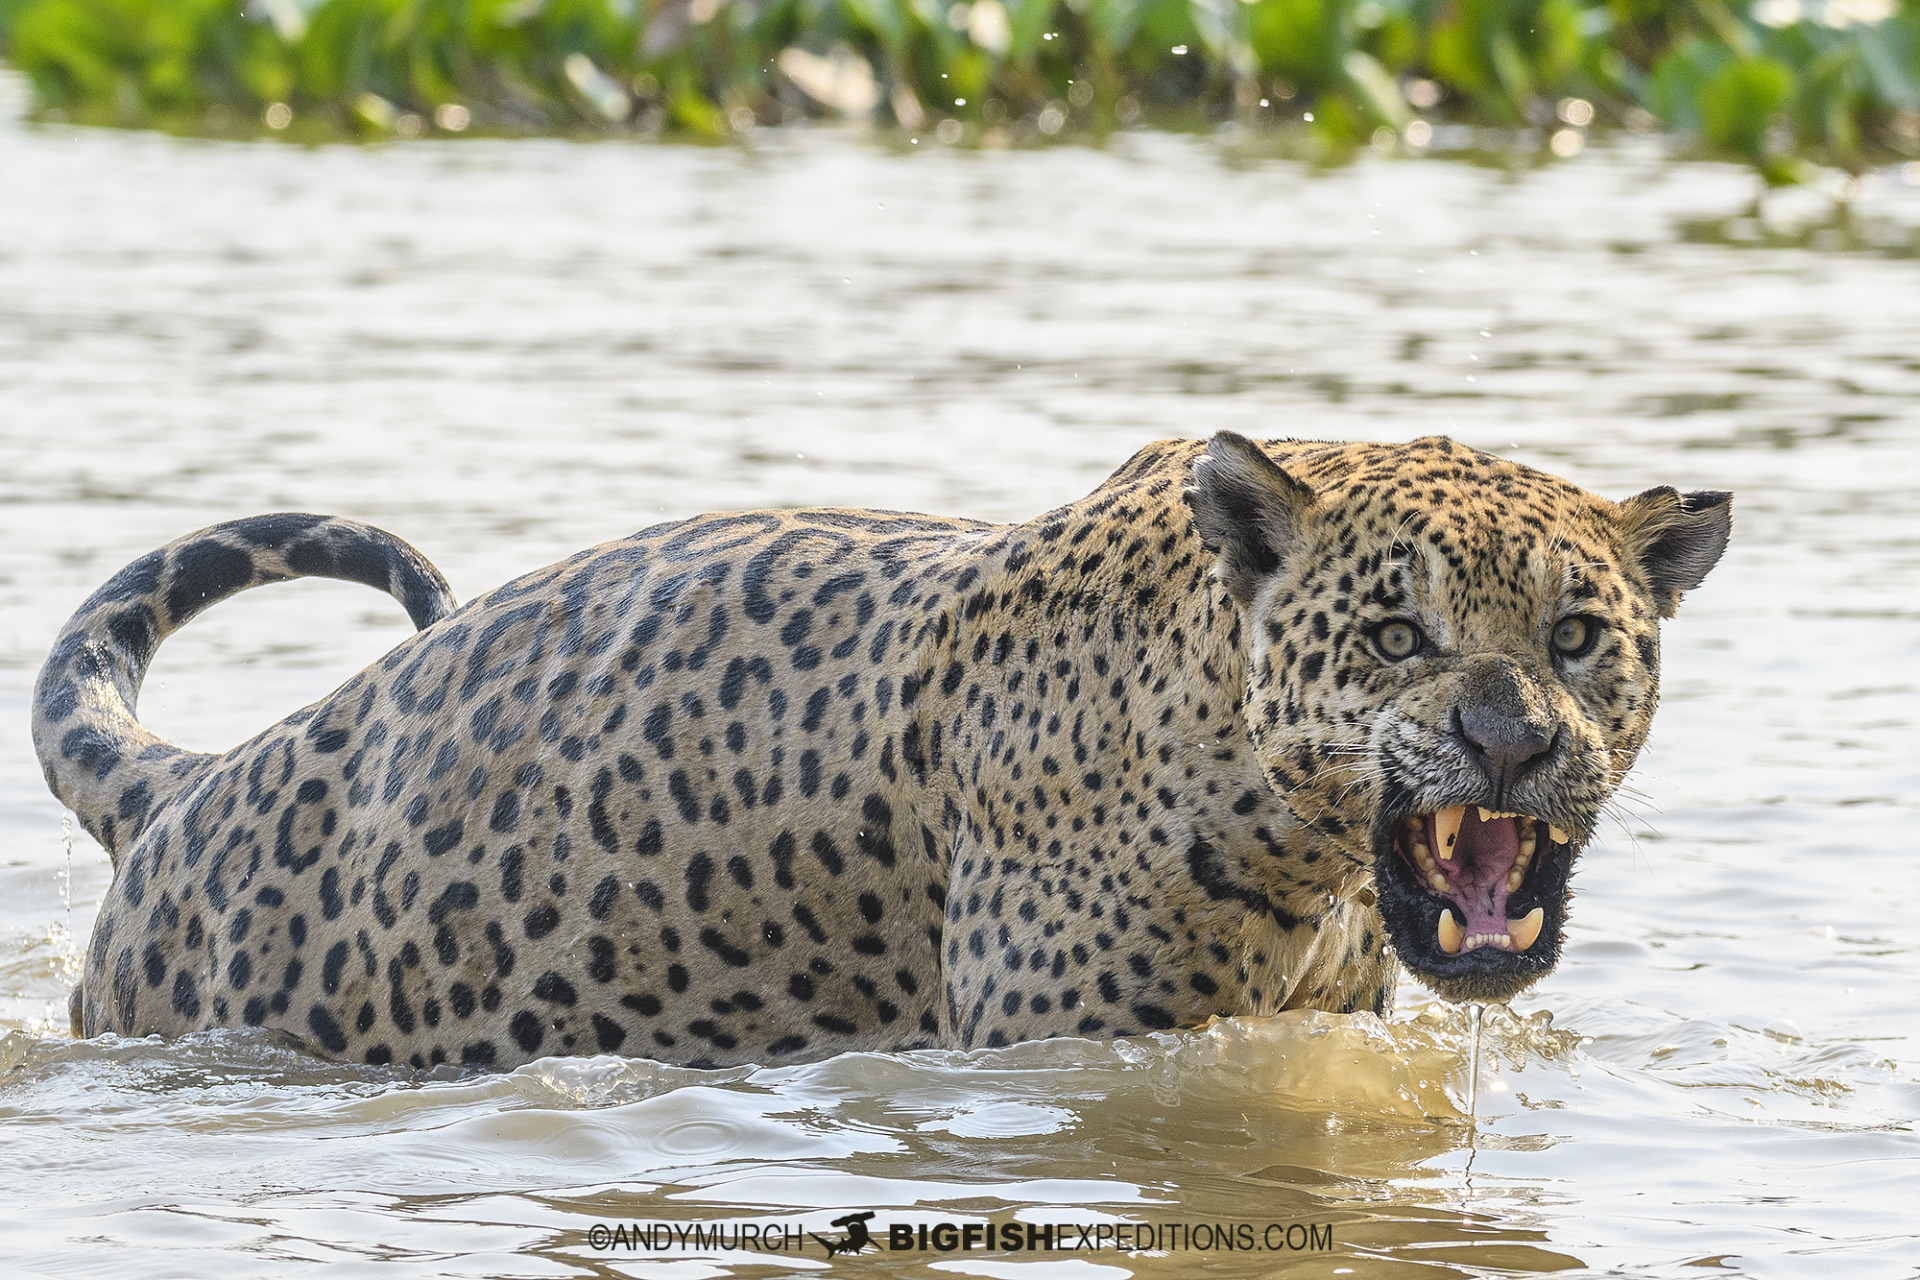 Jaguar Photography Tour in the Brazilian Pantanal.